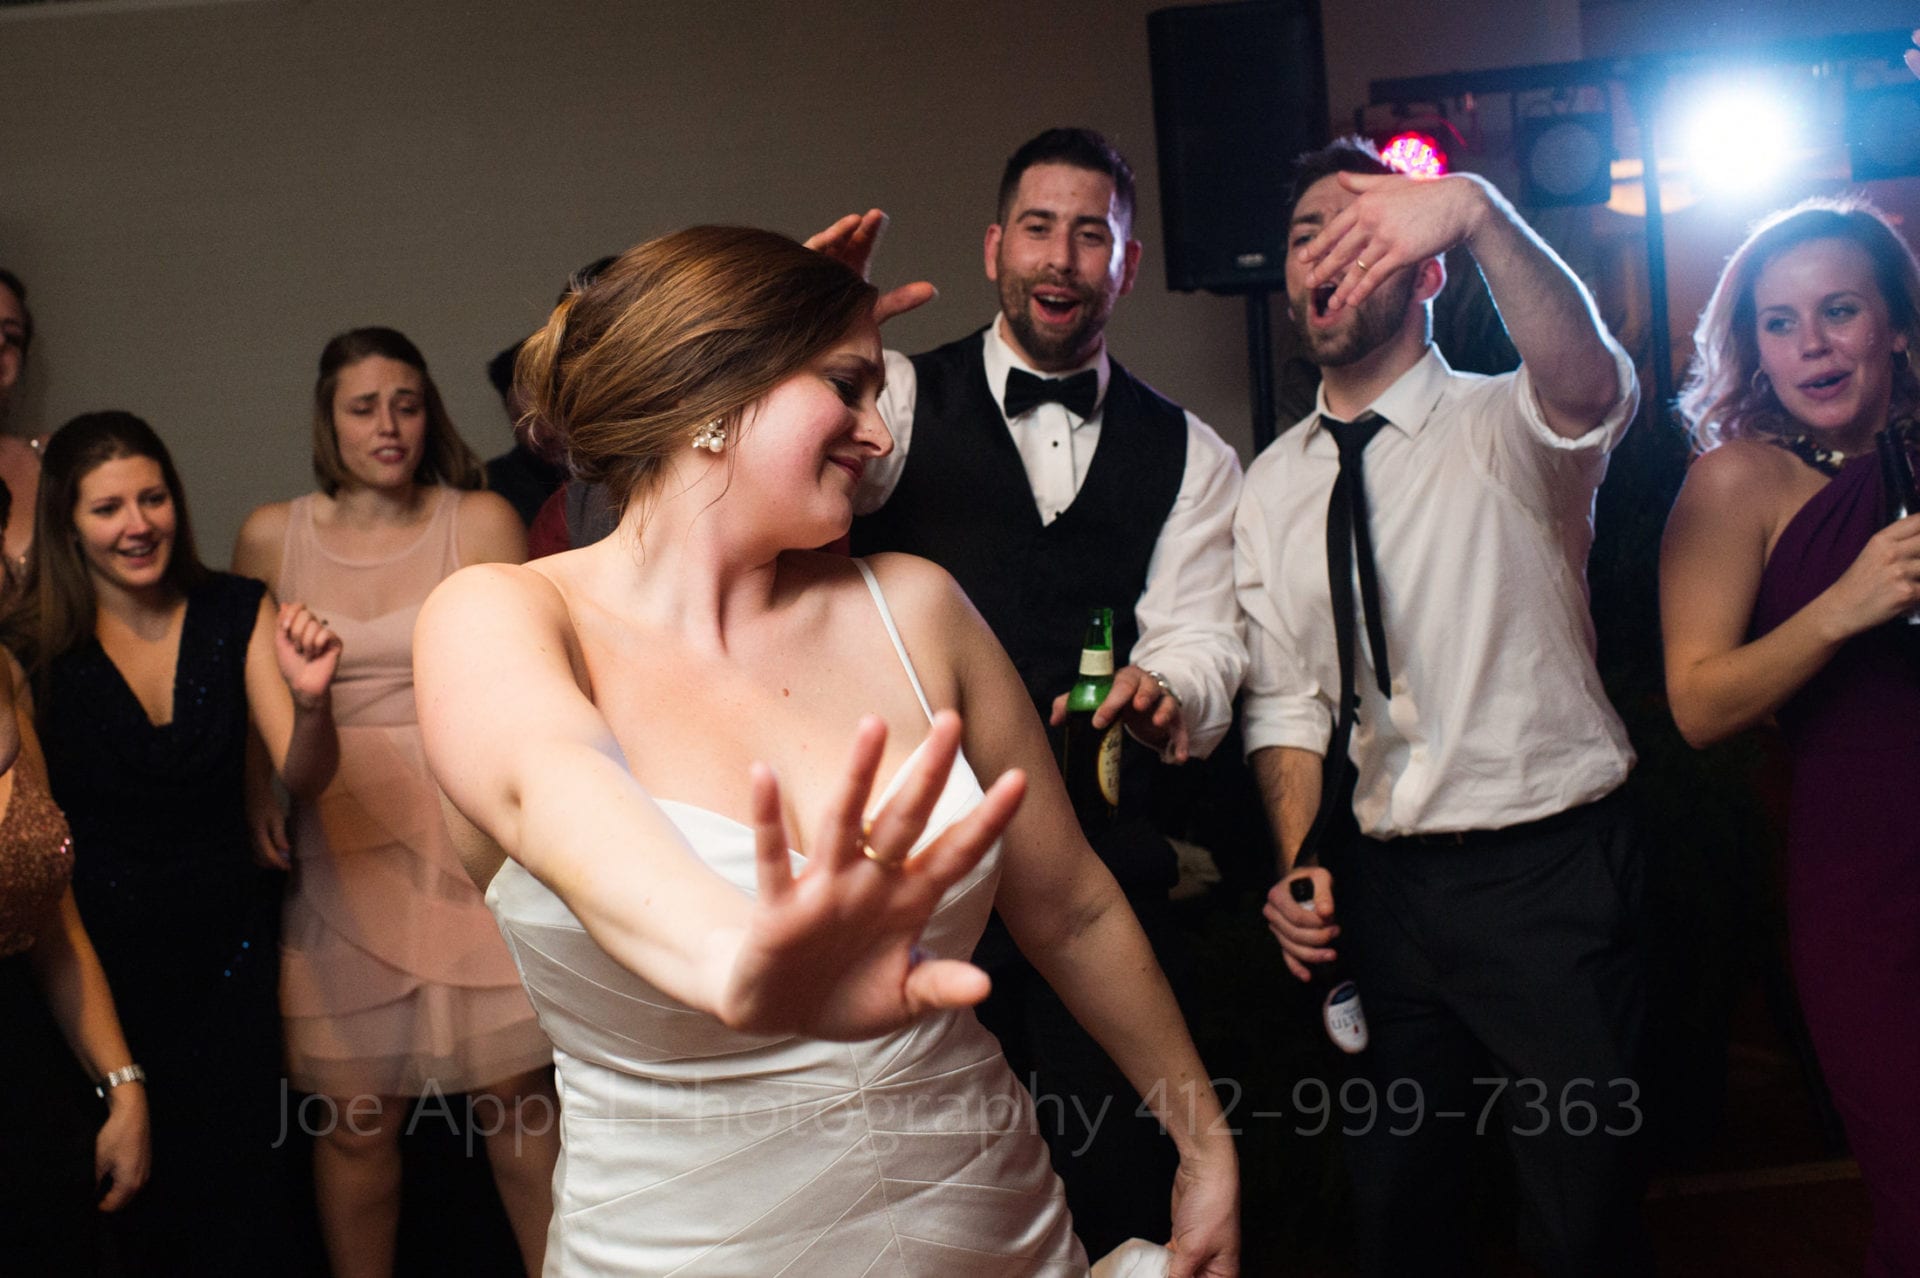 guests cheer as a bride dances